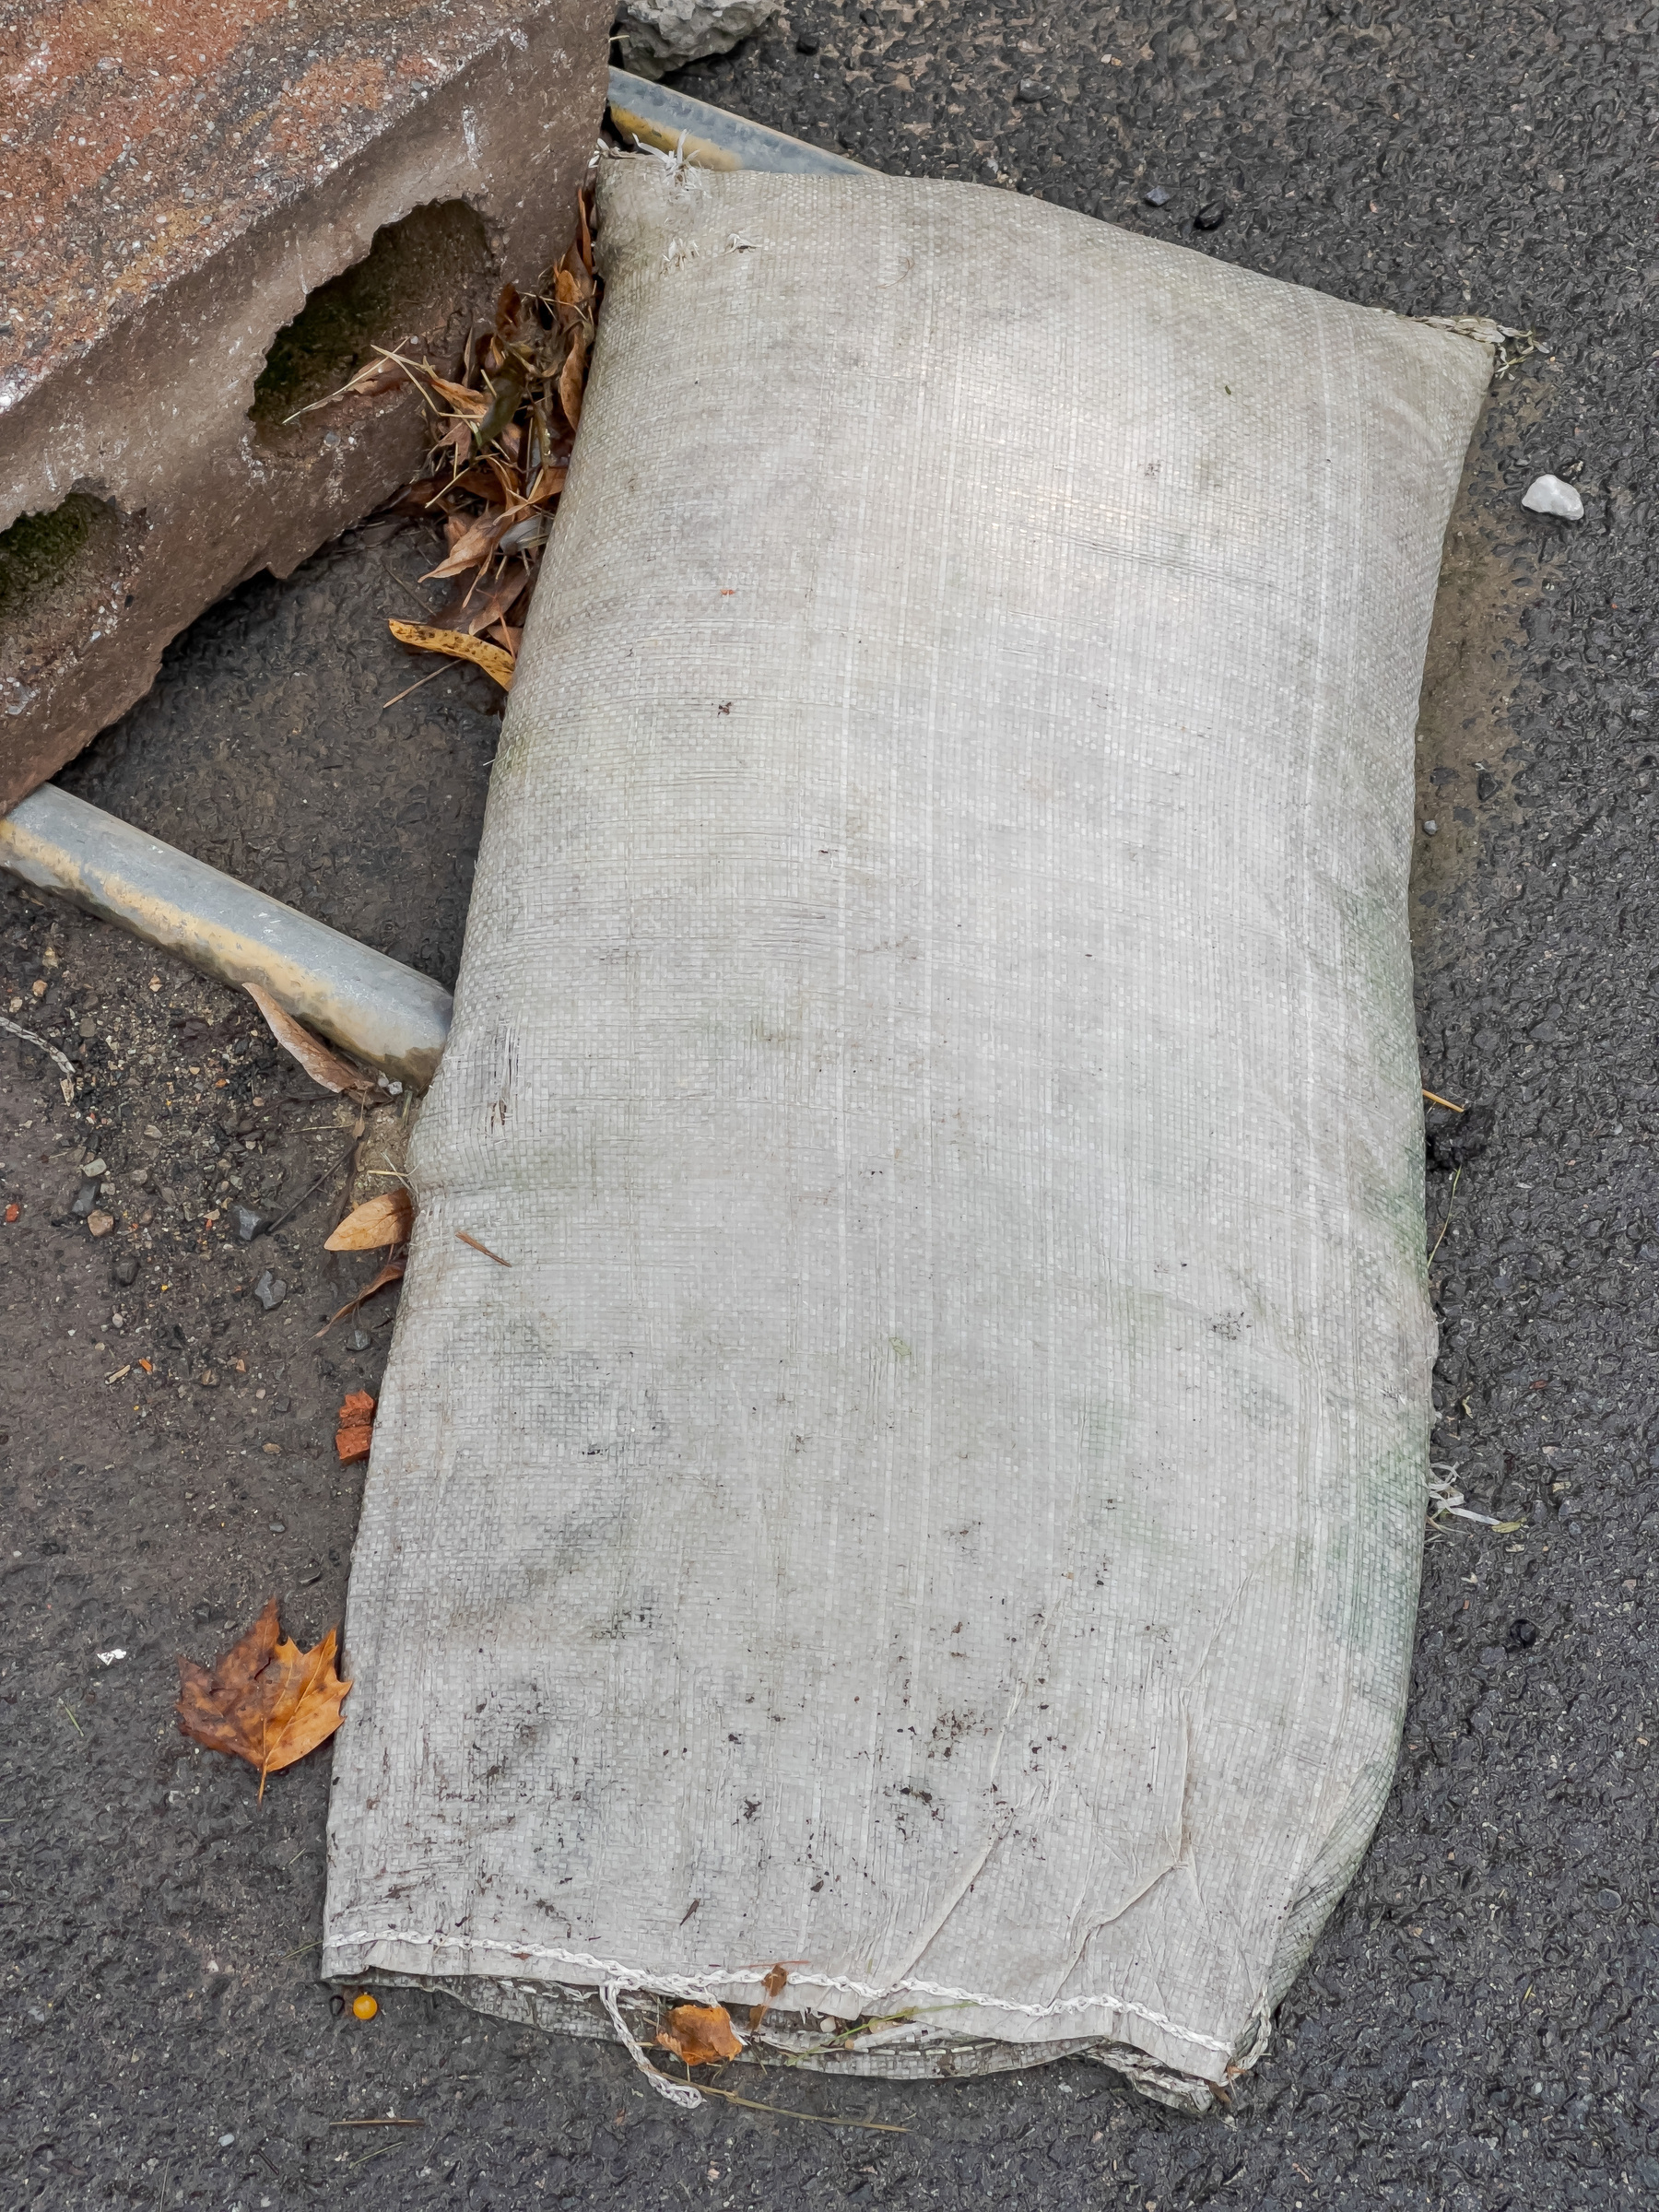 Sandbag laying on asphalt with concrete block in upper left corner of frame.